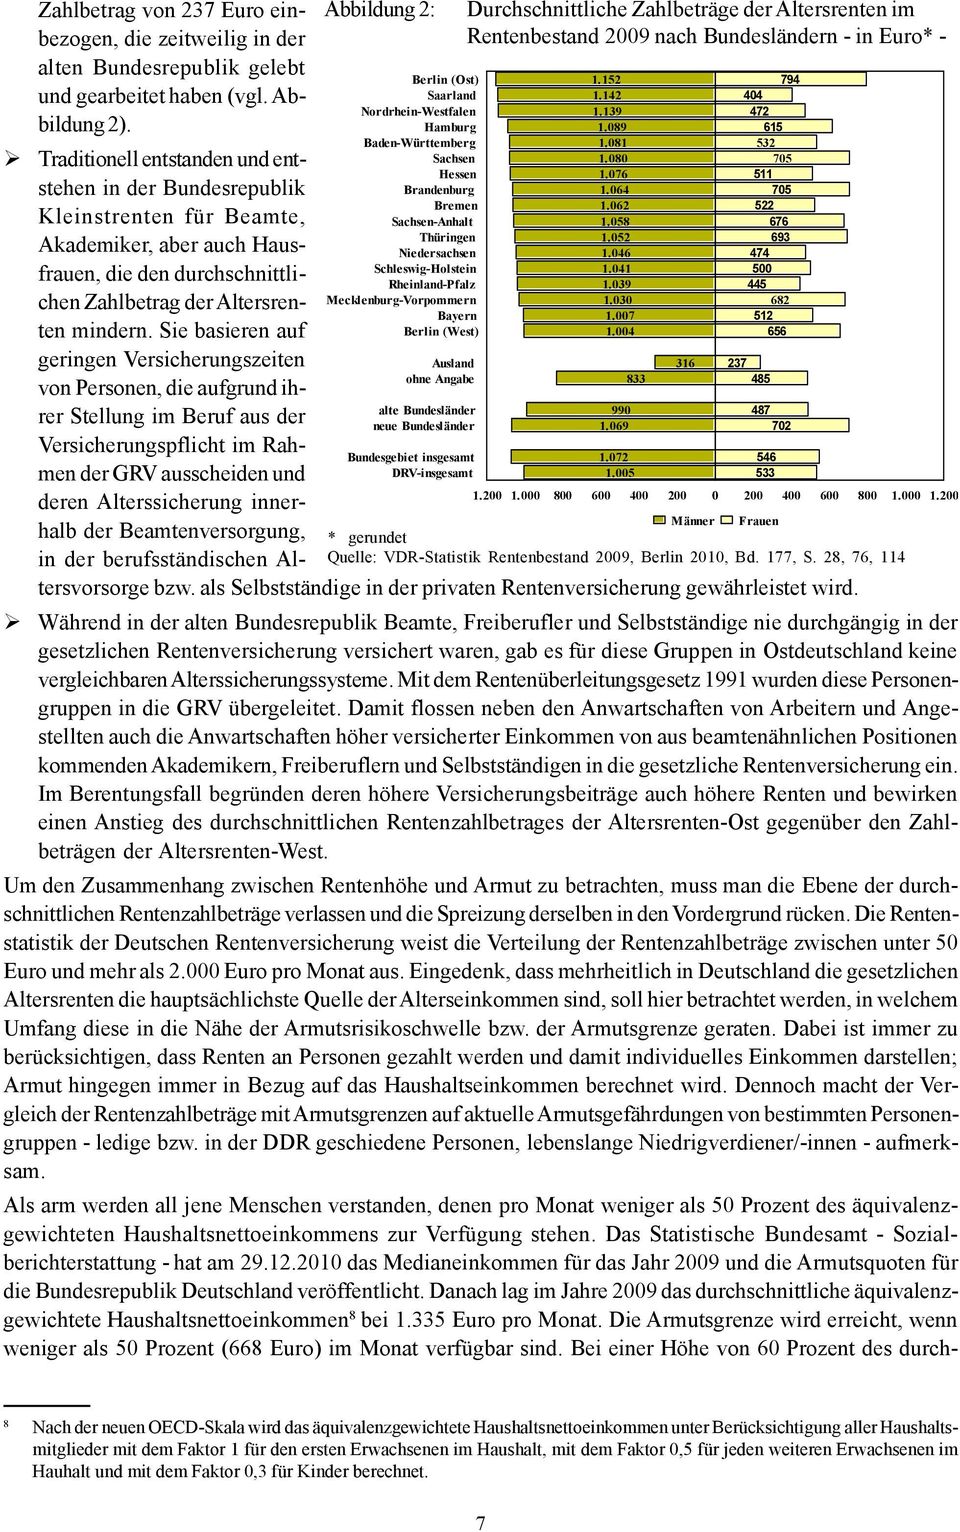 Mecklenburg-Vorpommern Bayern Berlin (West) Durchschnittliche Zahlbeträge der Altersrenten im Rentenbestand 2009 nach Bundesländern - in Euro* - 1.152 1.142 1.139 1.089 1.081 1.080 1.076 1.064 1.